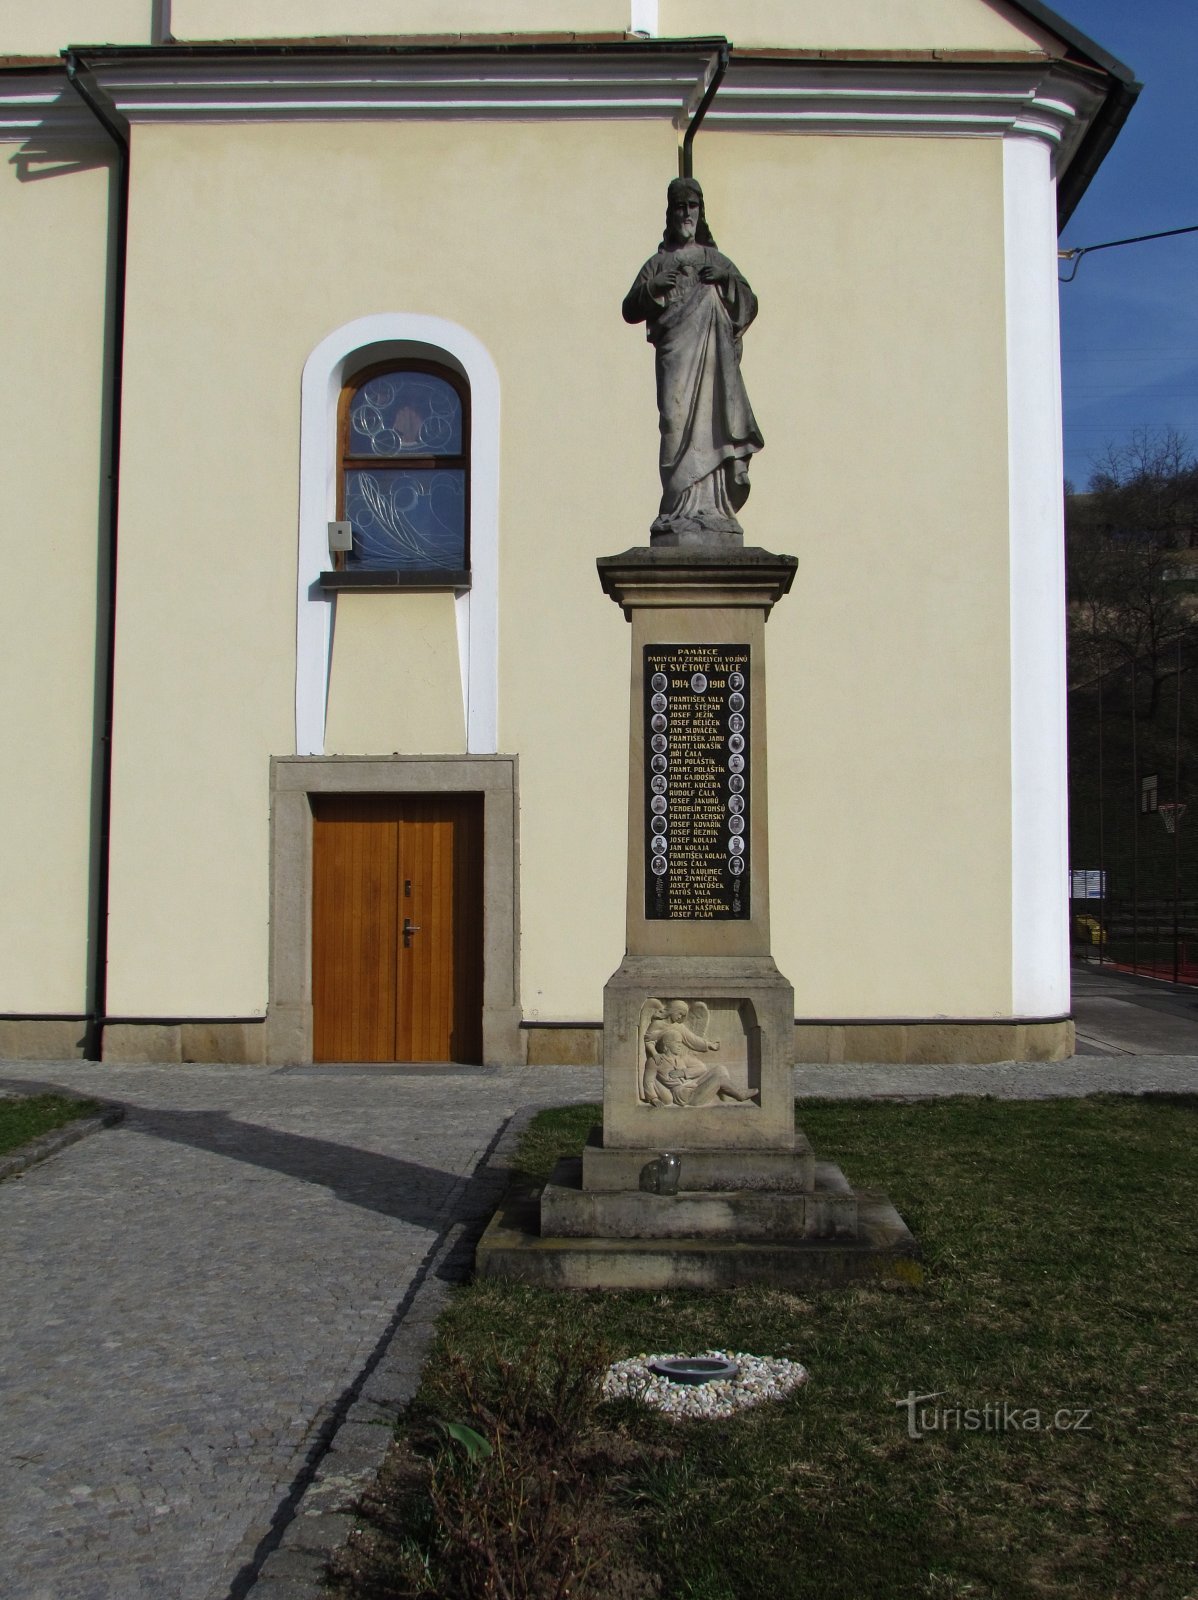 Cristo e o monumento aos que morreram na Primeira Guerra Mundial